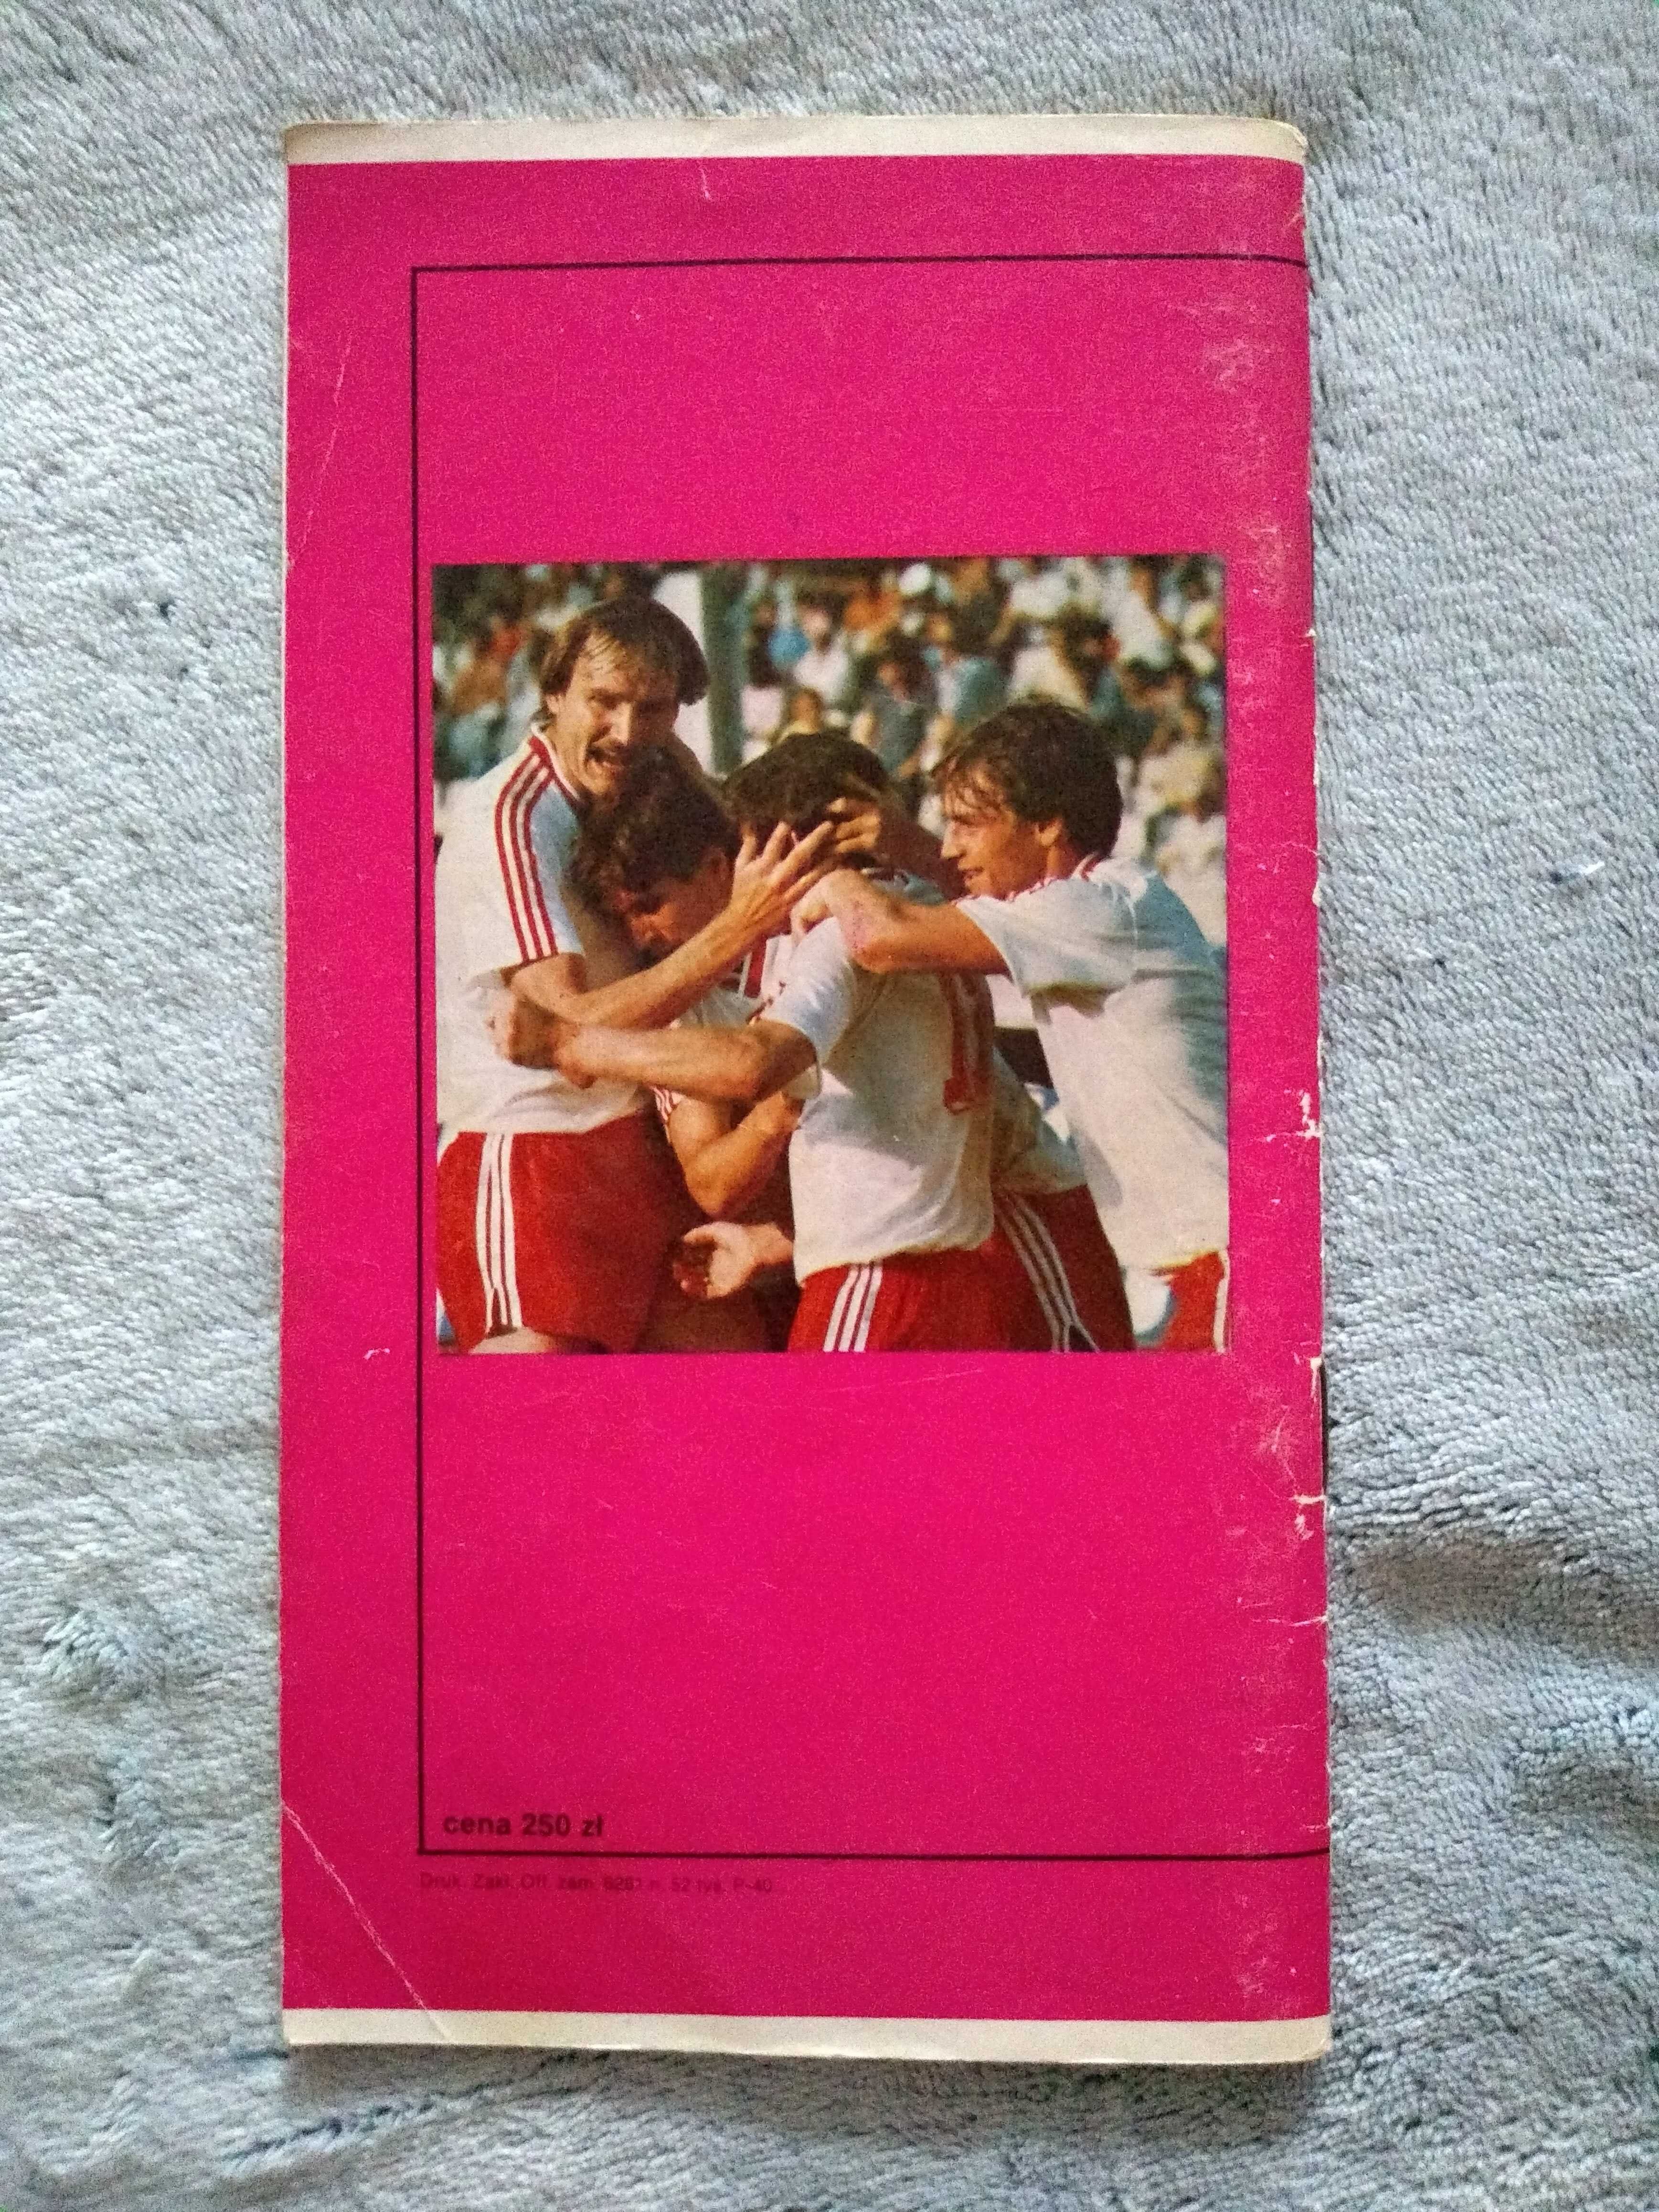 Polska'86 XII Mistrzostwa Świata Meksyk + Reprezentacja Polski